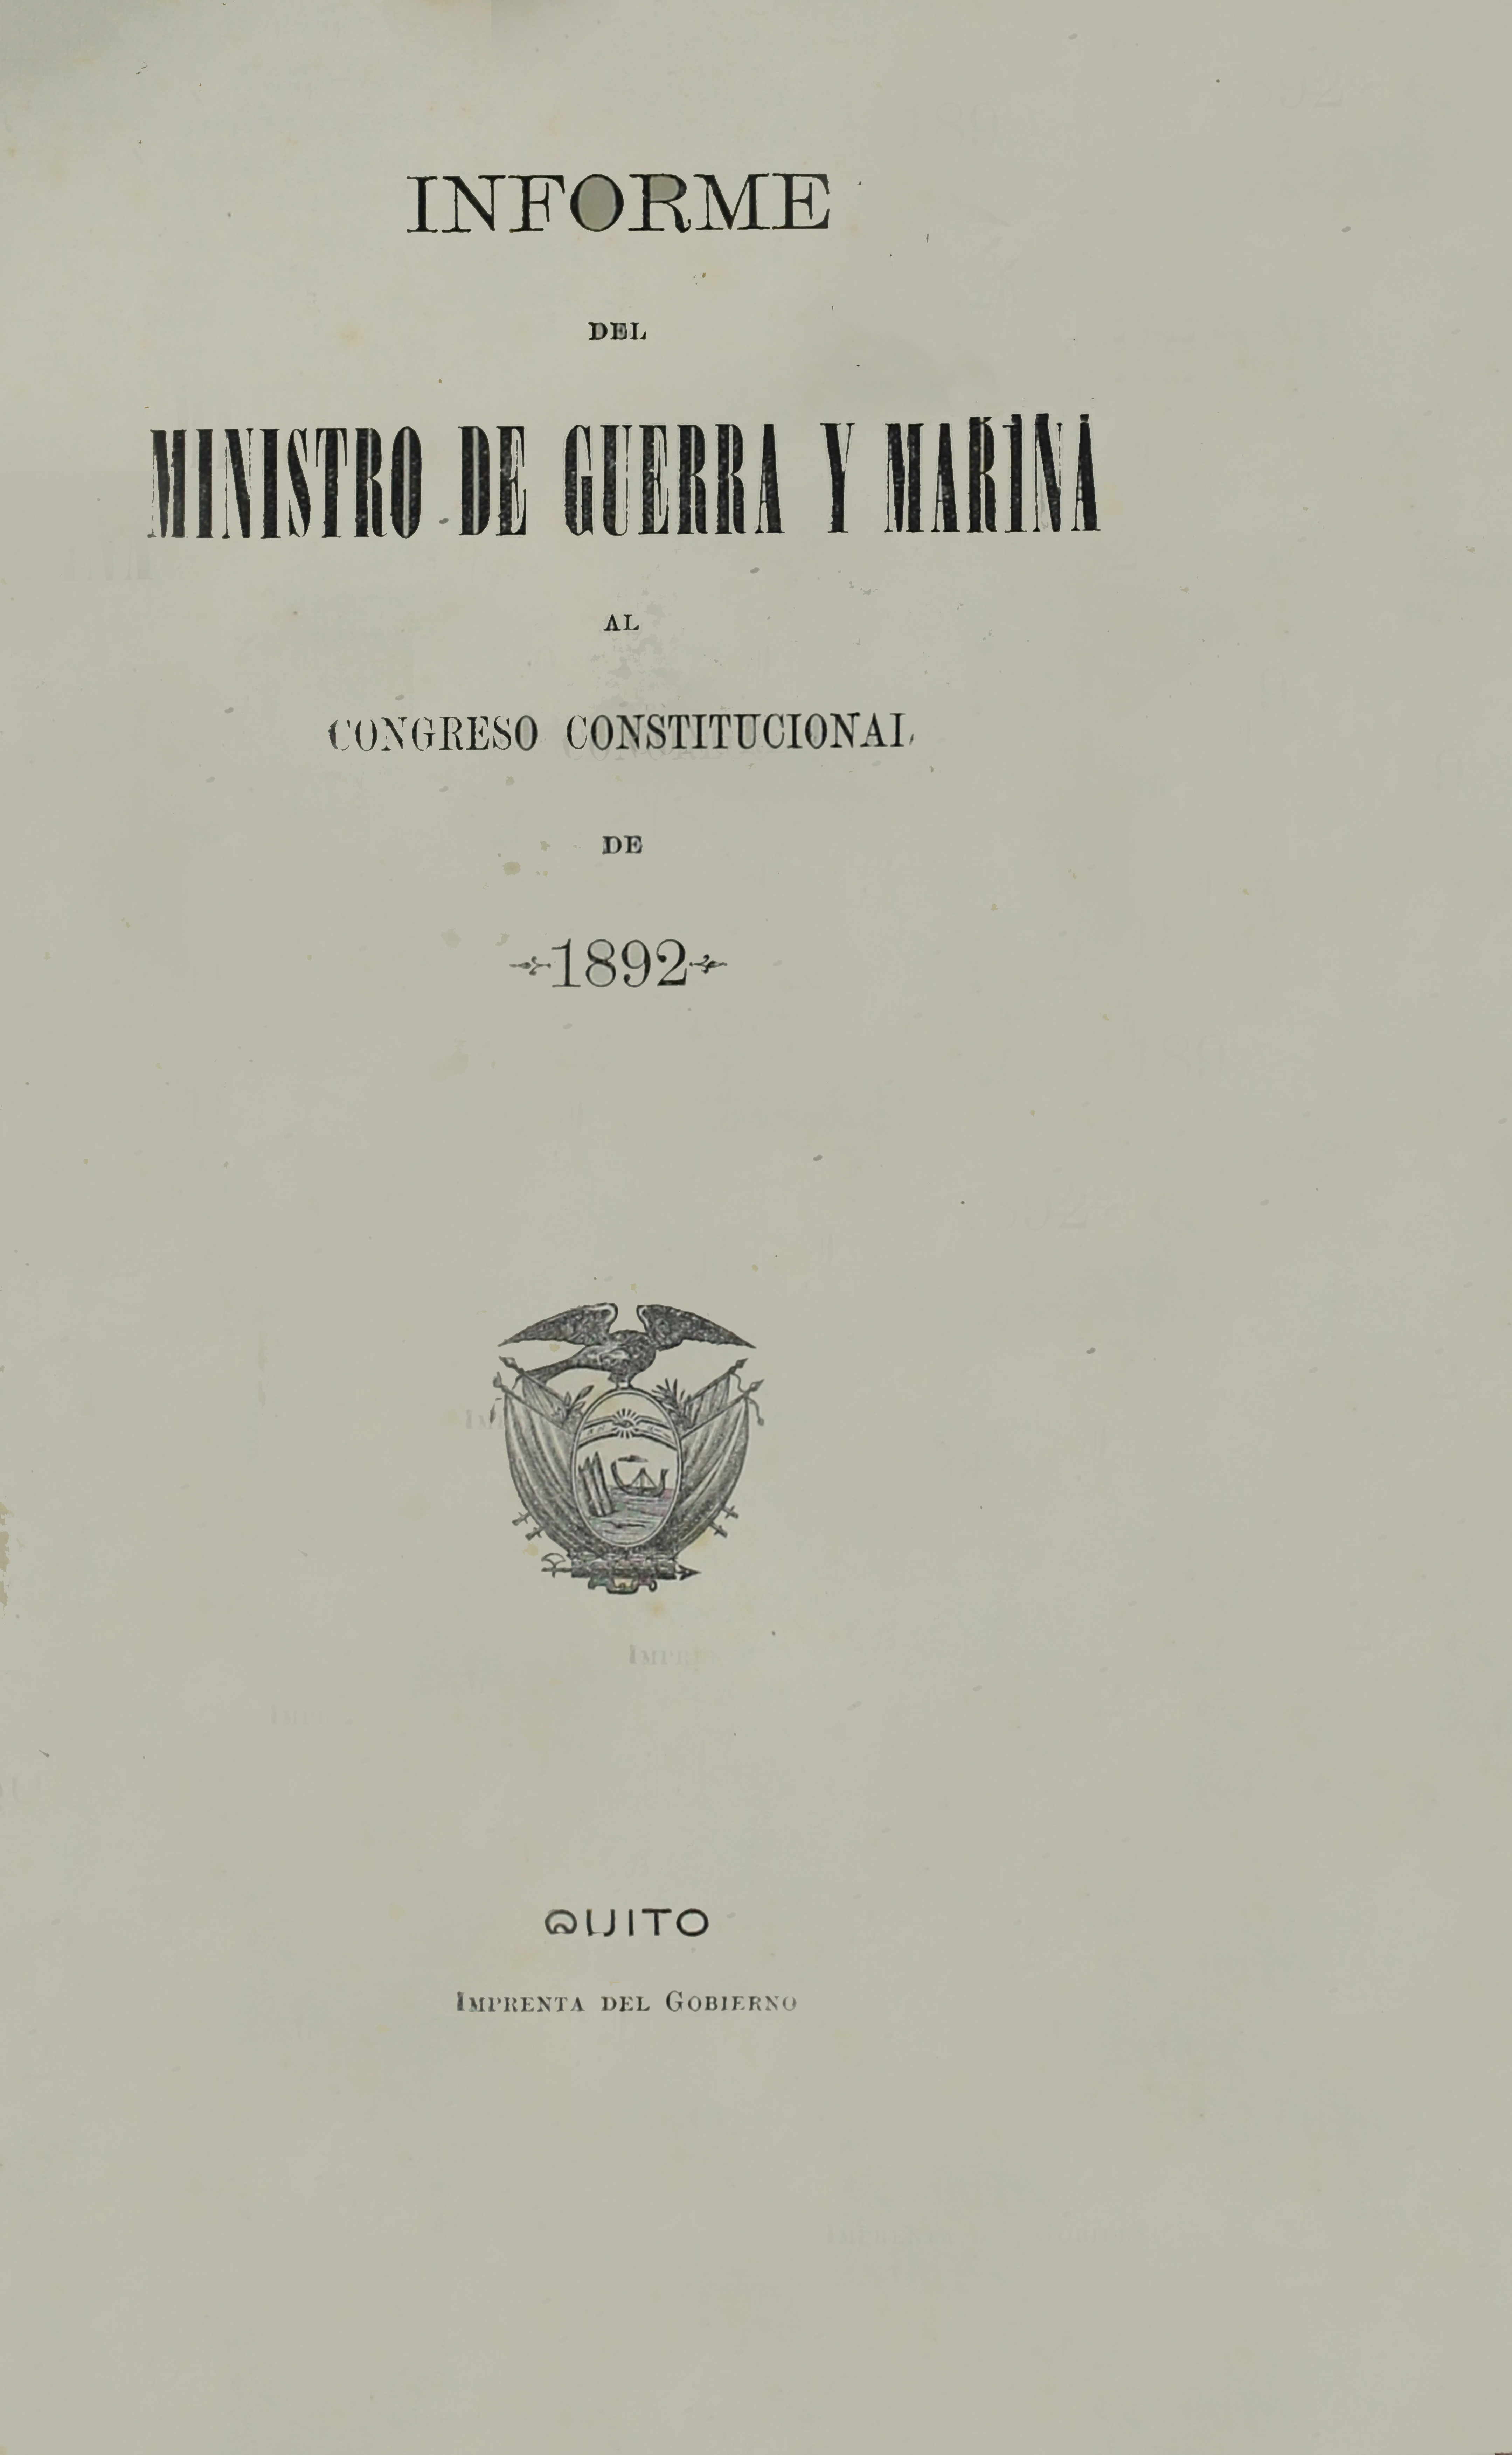 Informe del Ministro de Guerra y Marina al Congreso Constitucional de 1892